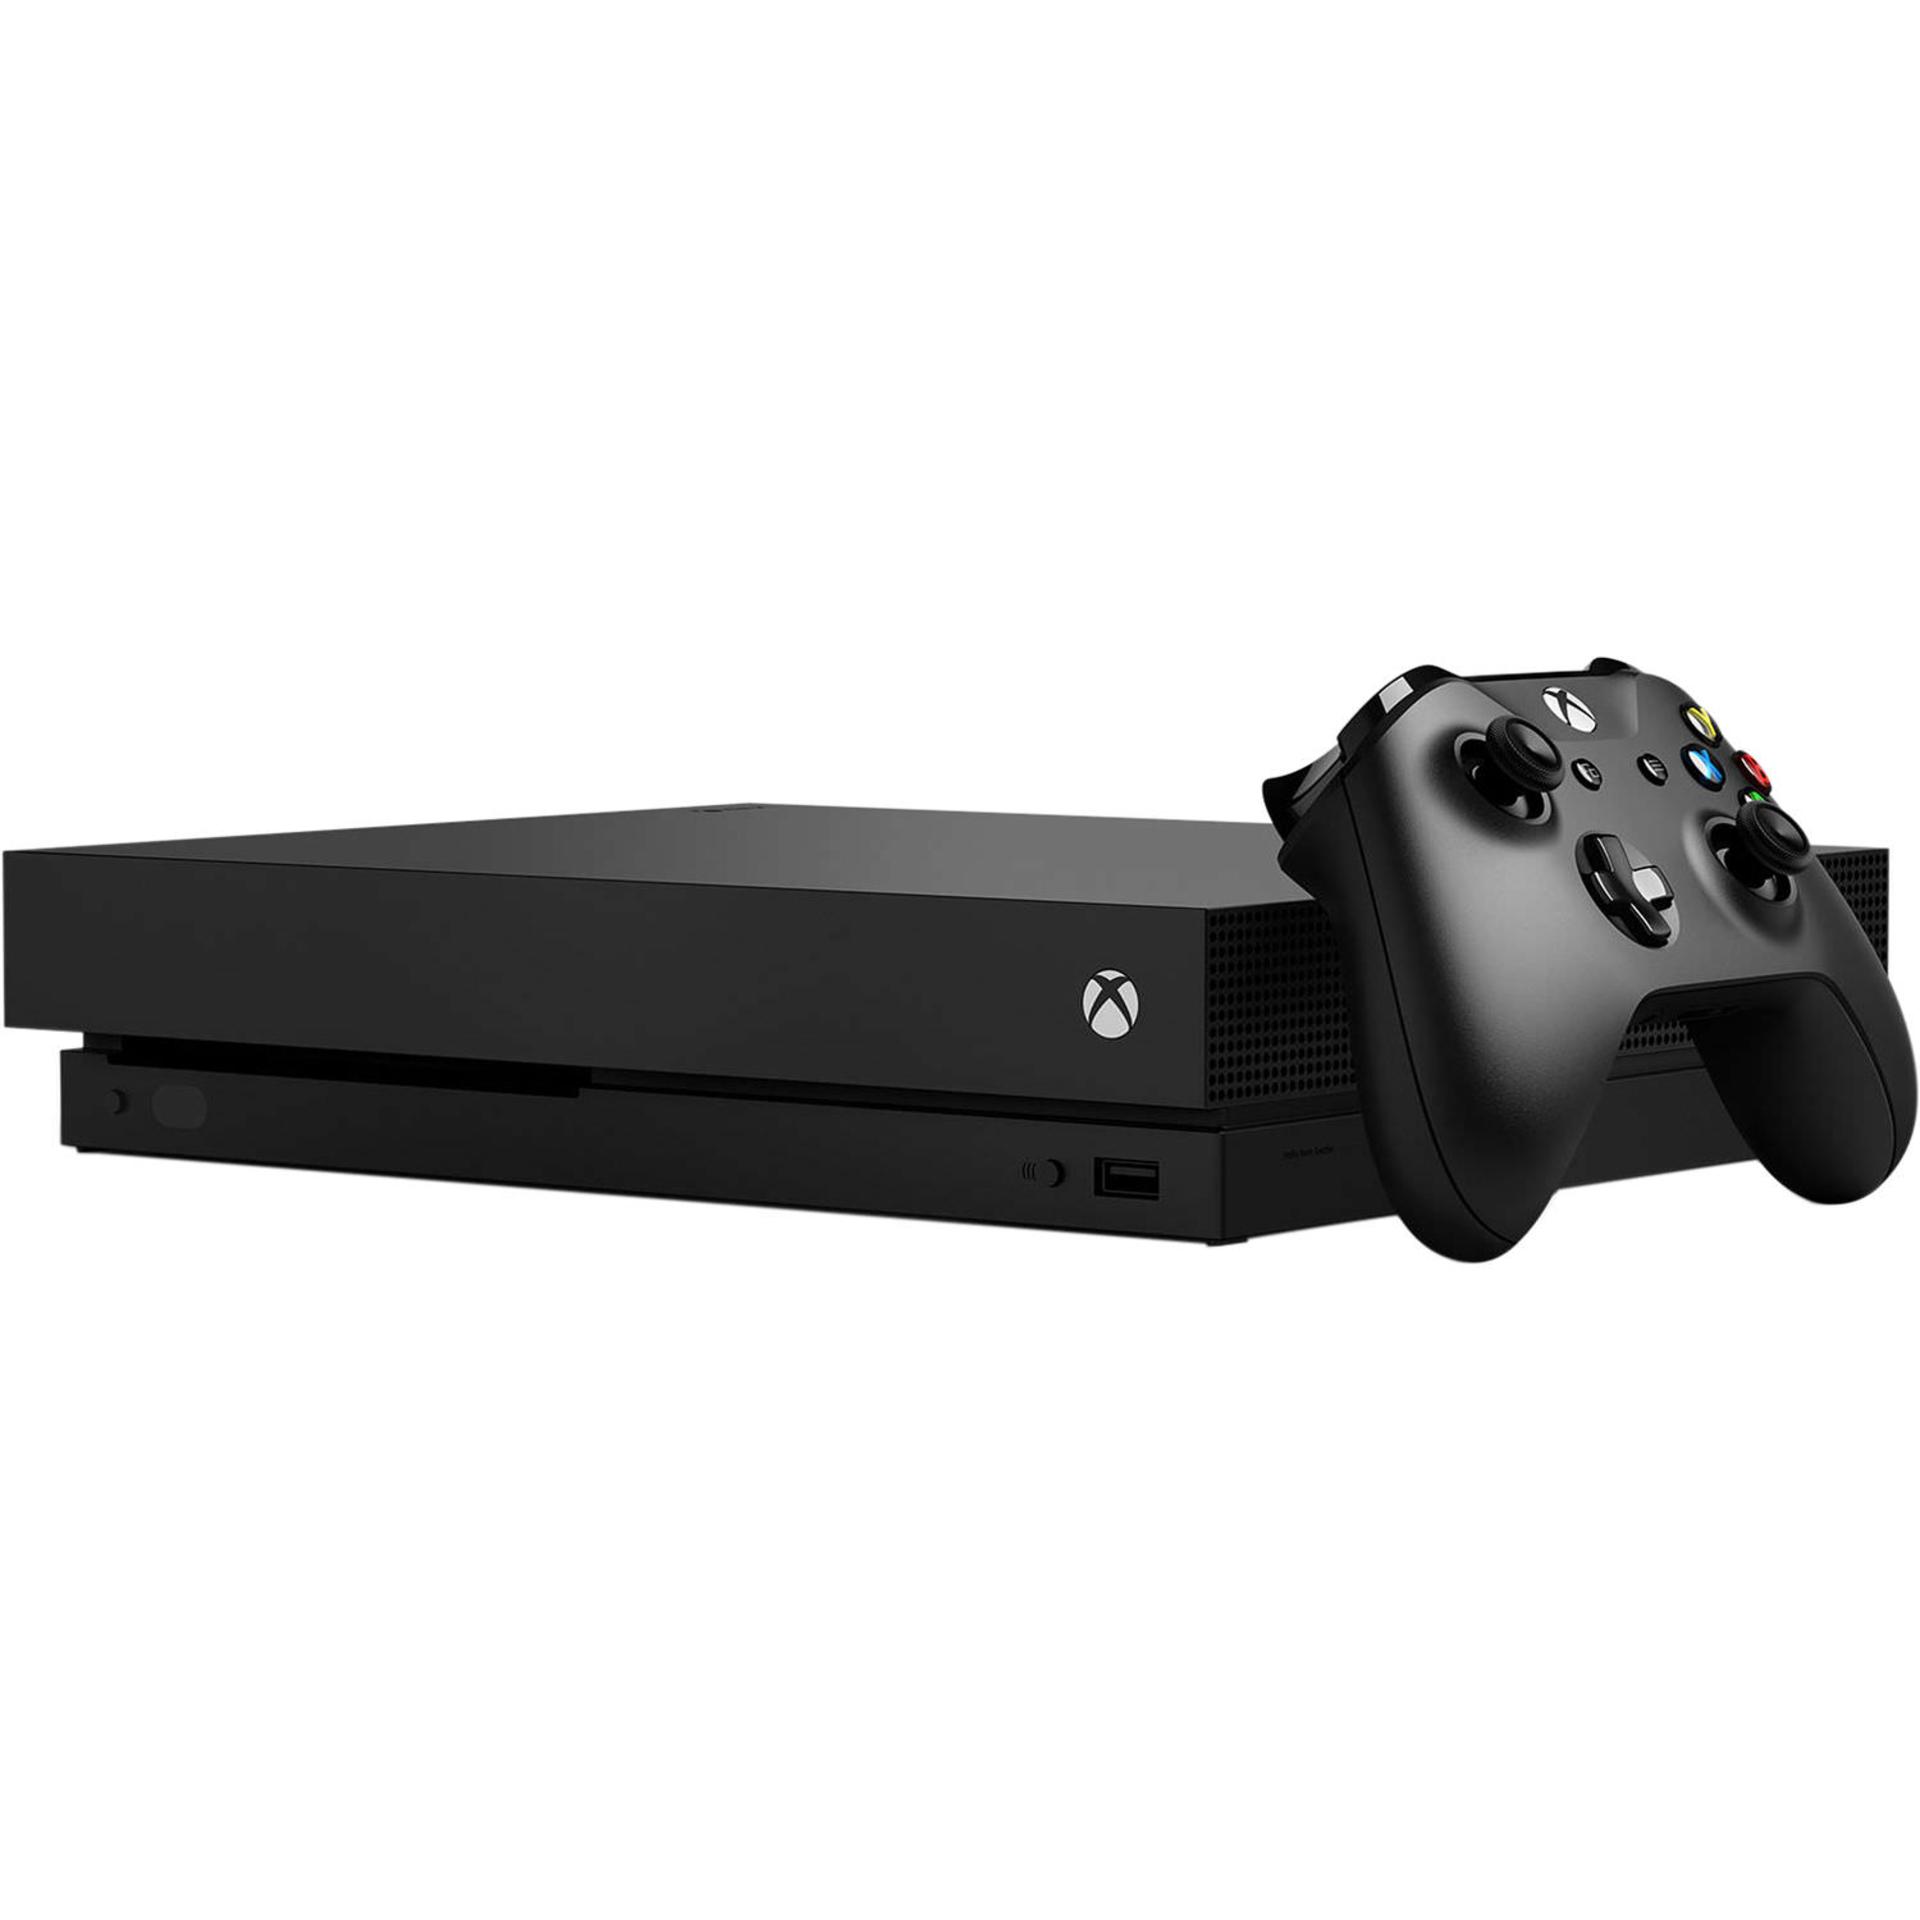 ایکس باکس وان ایکس مایکروسافت نمای جلو با دسته / Microsoft Xbox One X